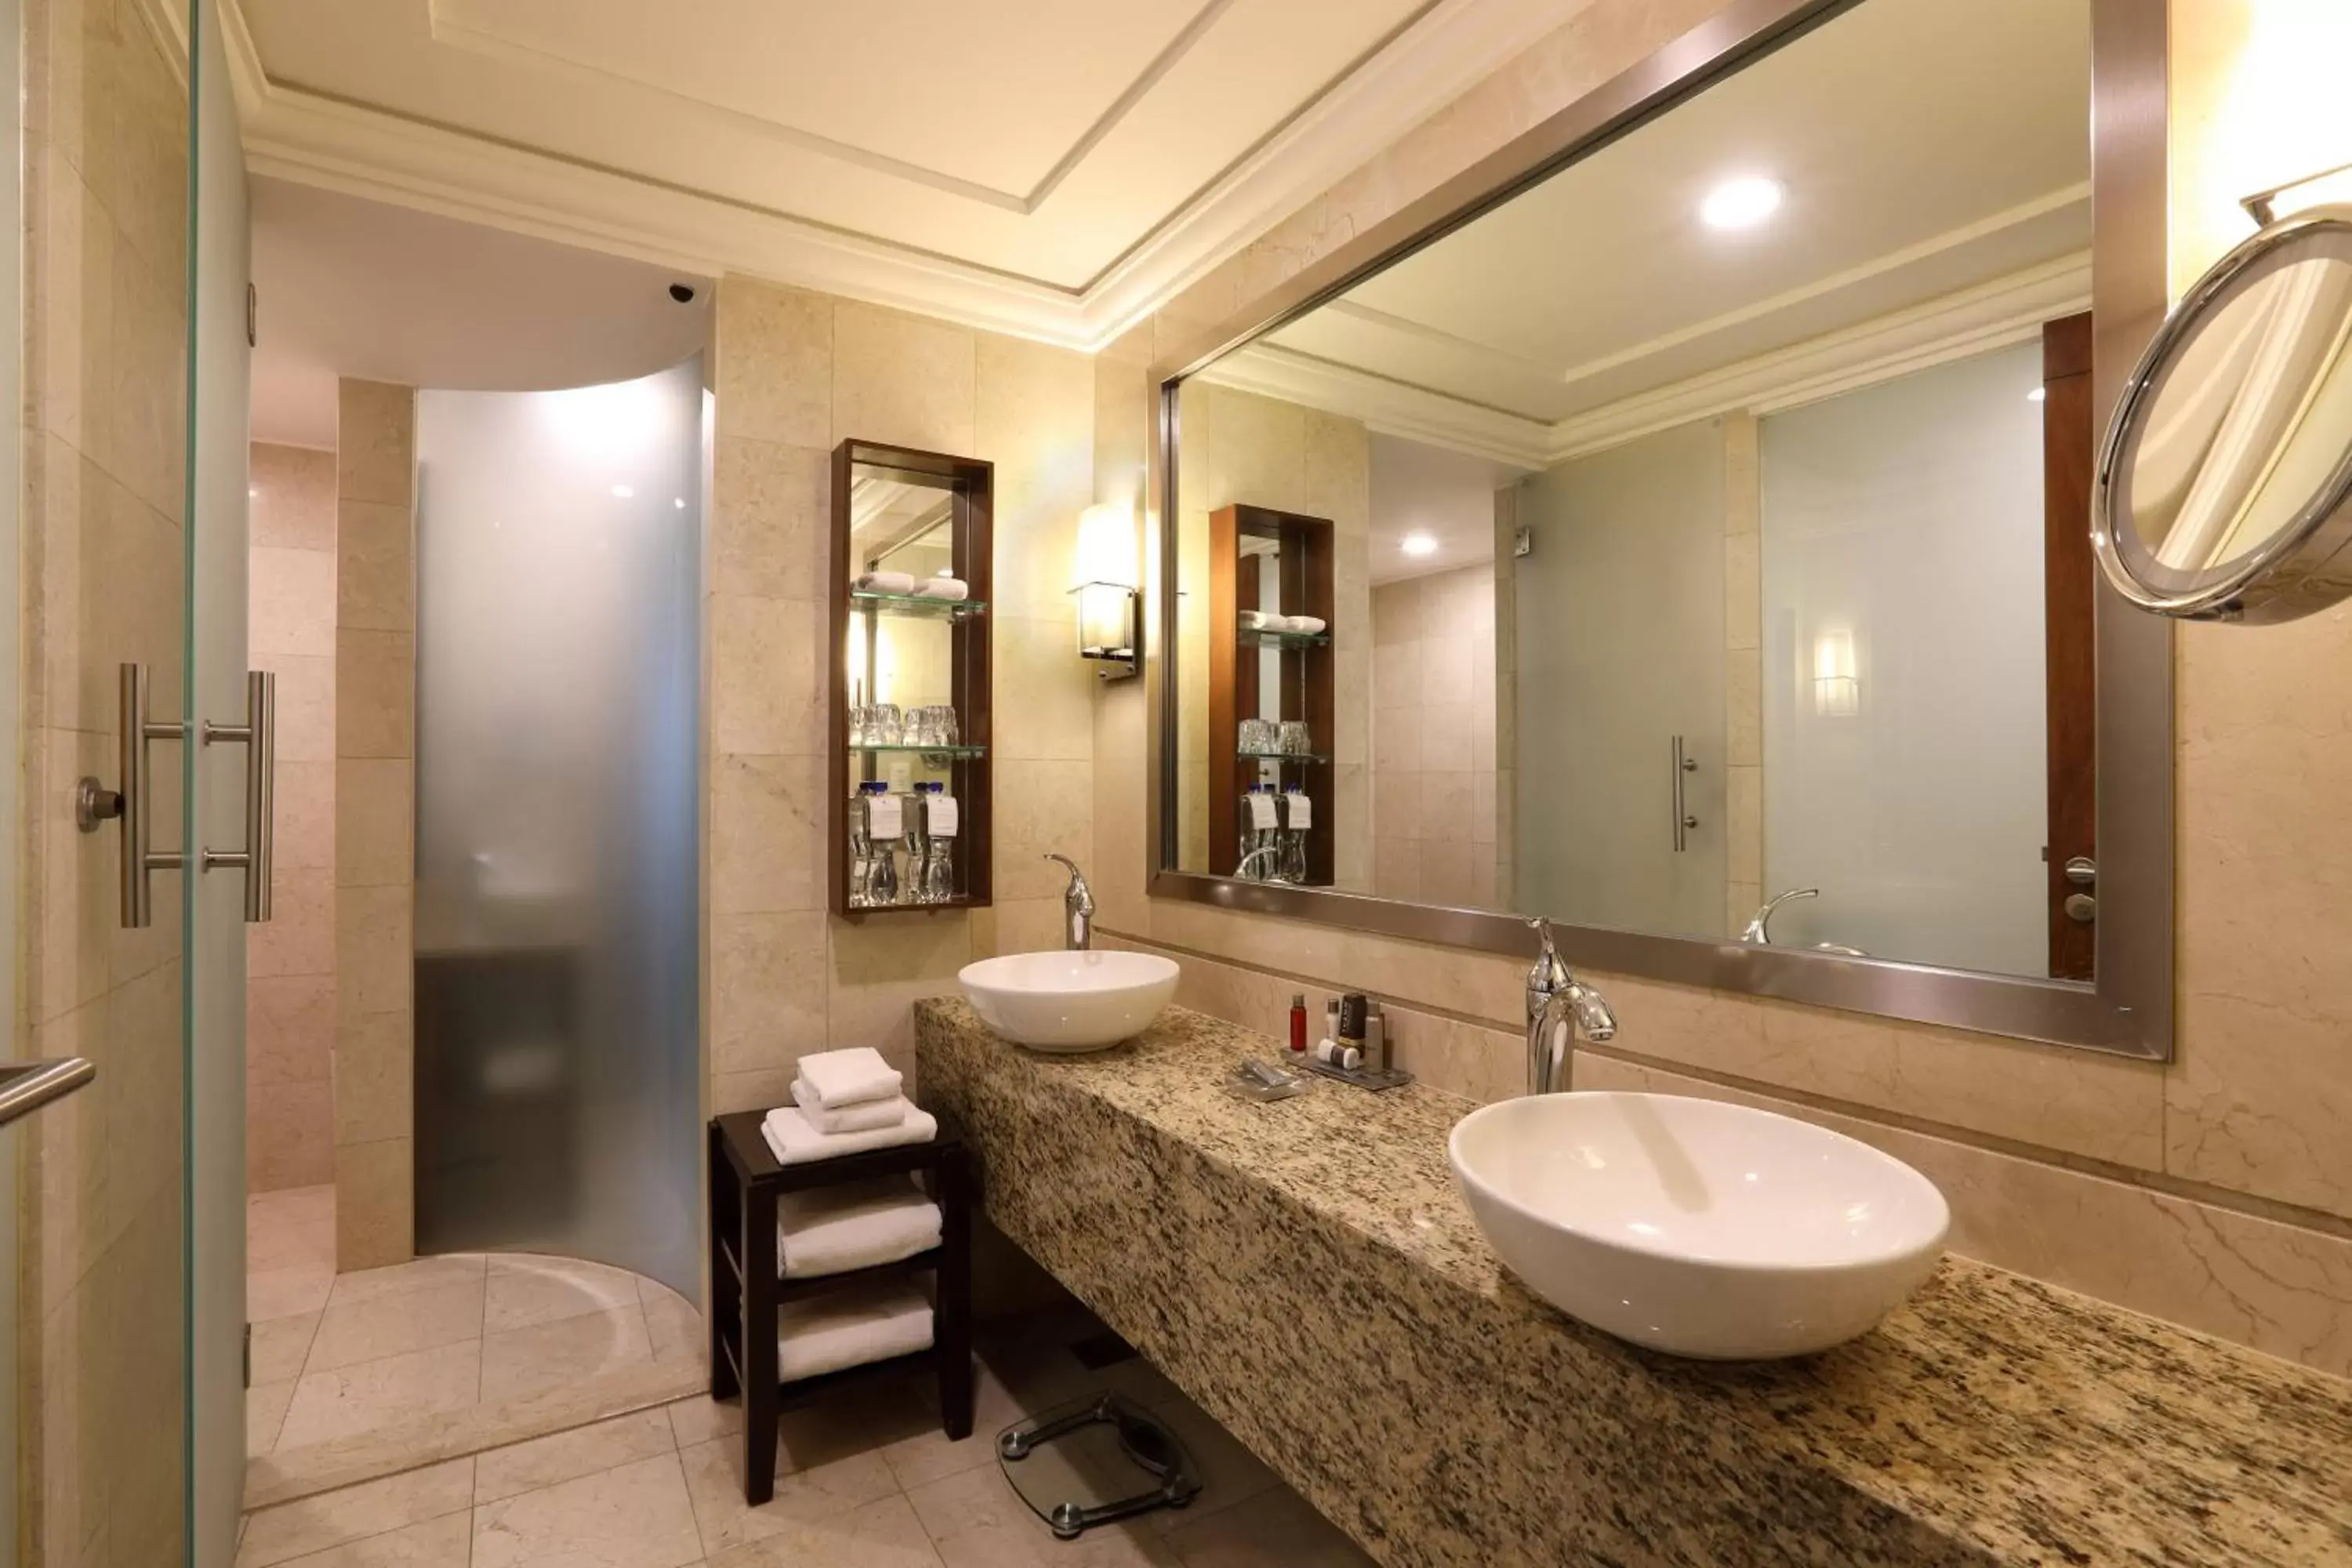 Bathroom in Mexico City Marriott Reforma Hotel